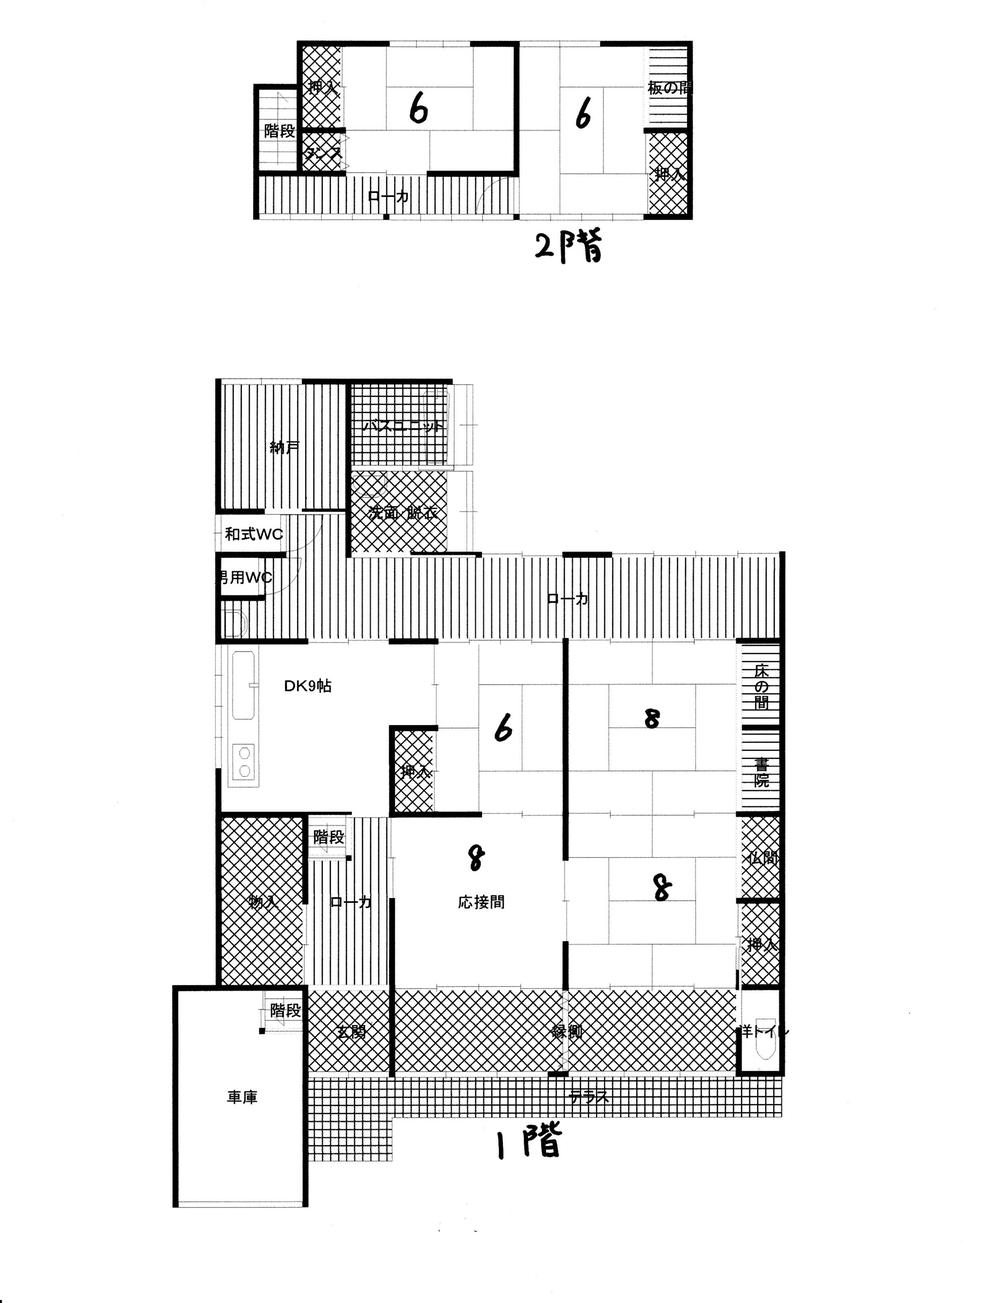 Floor plan. 13.5 million yen, 6DK, Land area 383.47 sq m , Building area 200.37 sq m